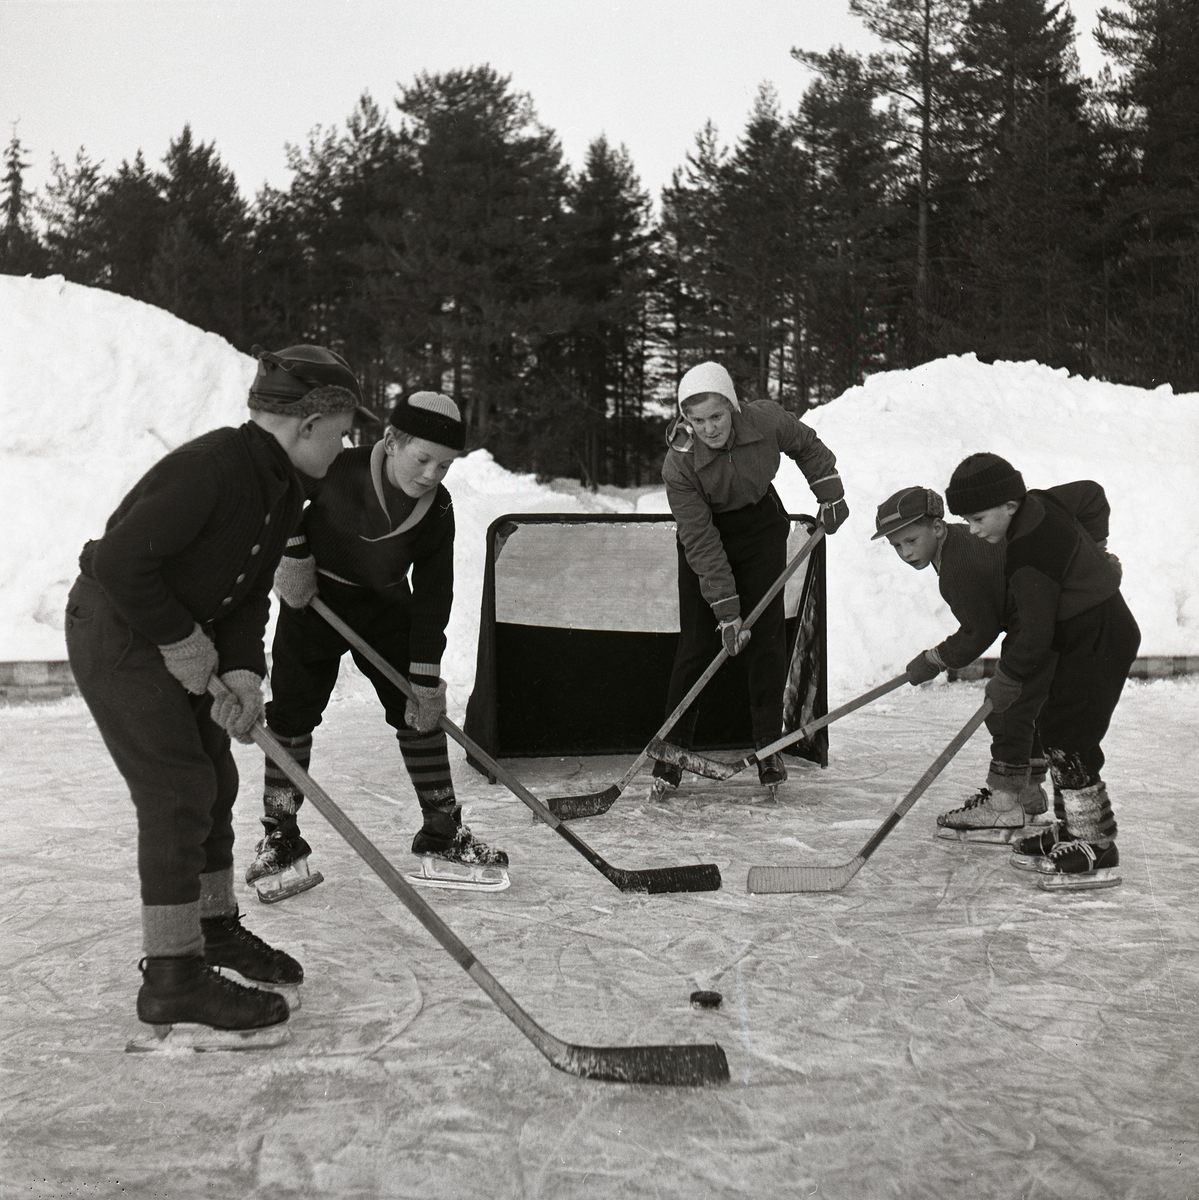 Det är några pojkar på isplanen och spelar ishockey, dom har skridskor, ishockeyklubbor, puck och en målbur. I bakgrunden är det snöhögar, skog och himmel. Ishockey Glösboplanen 27 januari 1959.